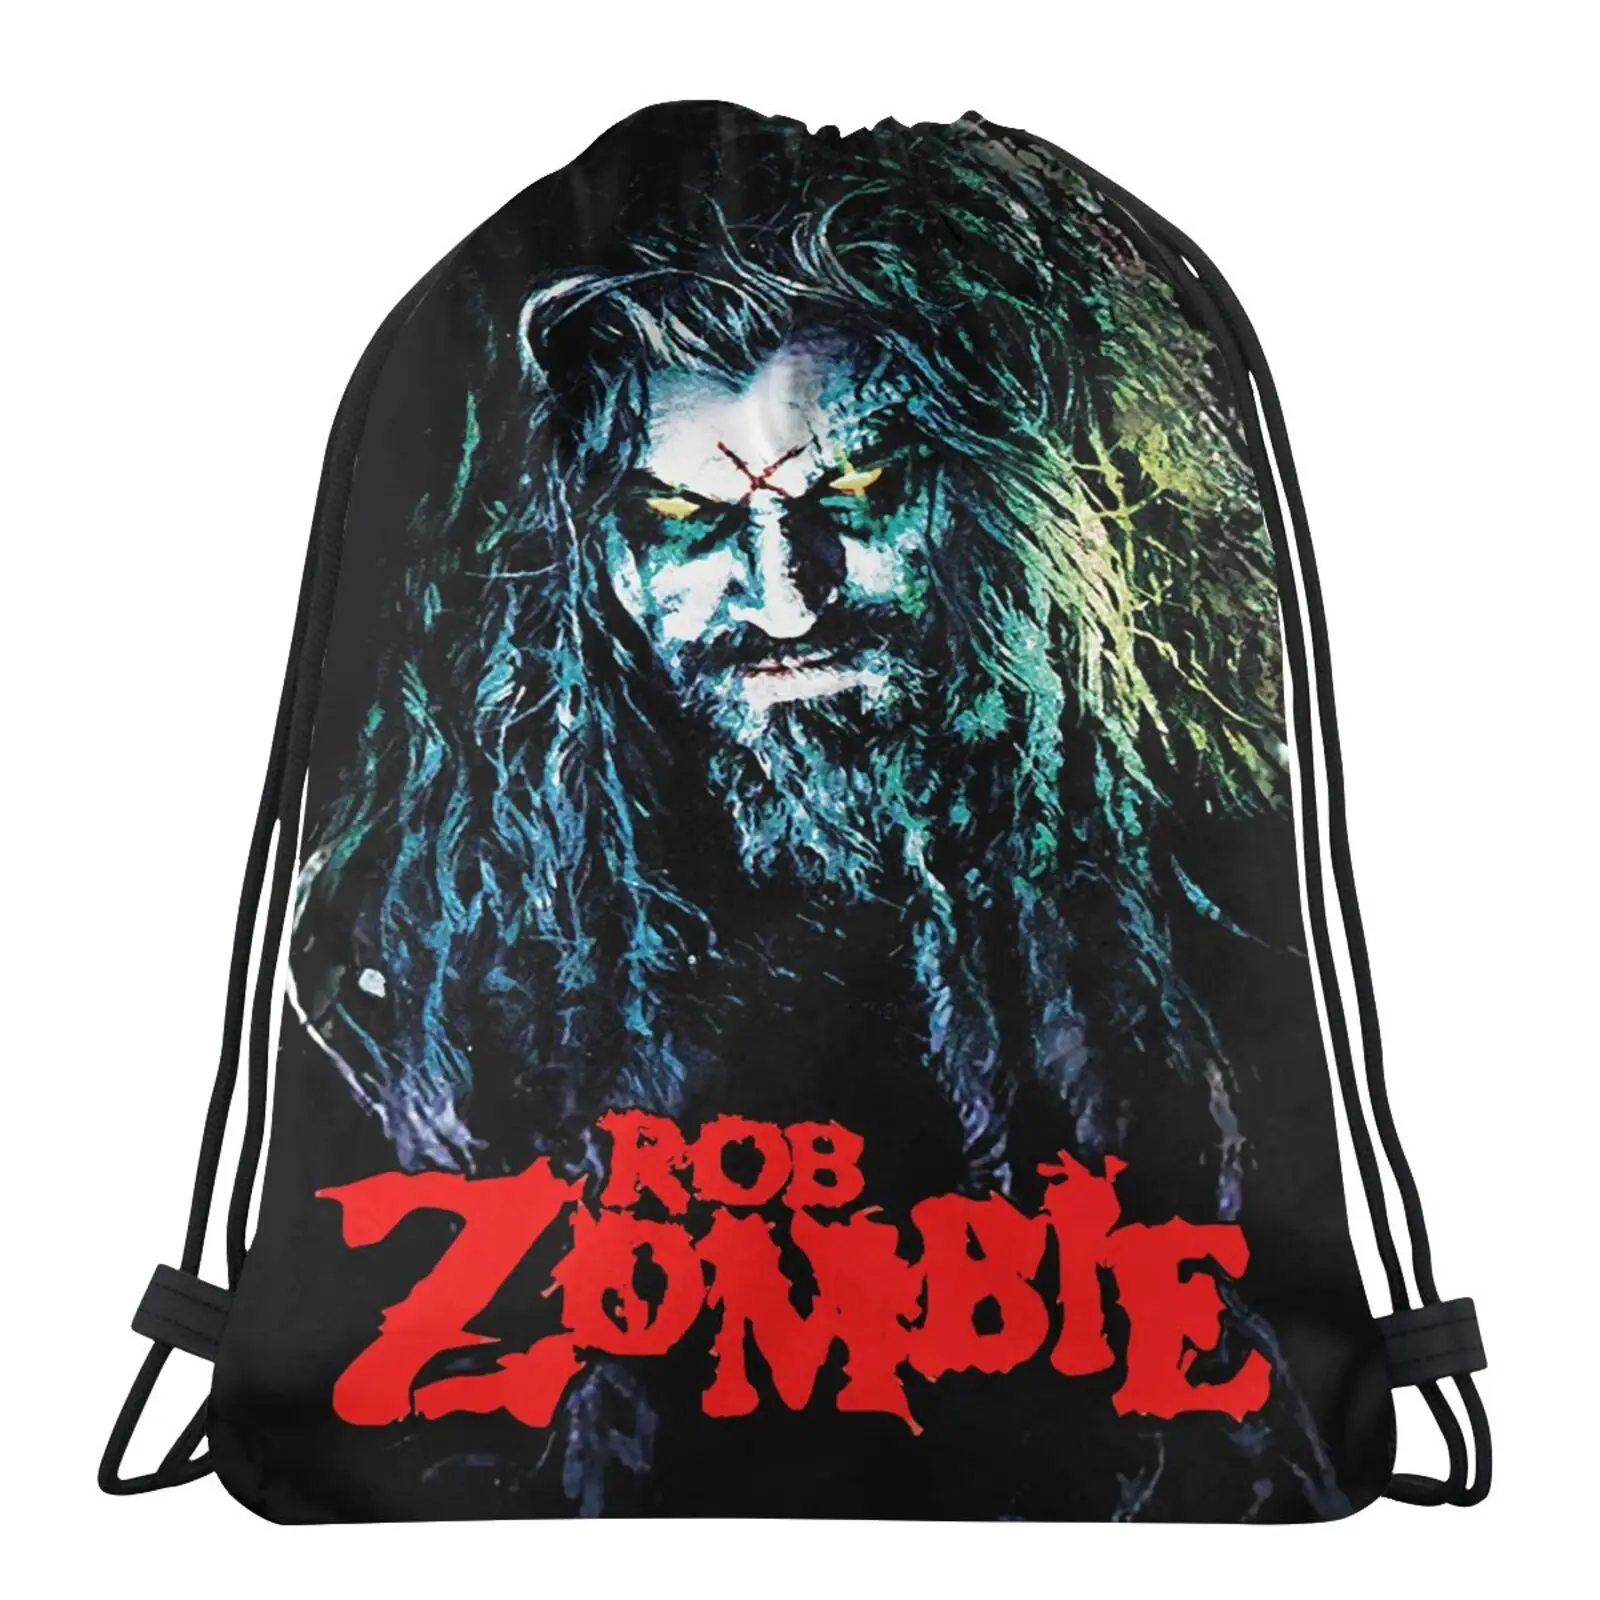 Bolsas extendidas de tela para hombre y mujer, morral de embalaje para niñas y niños, modelo Rob Zombie draula